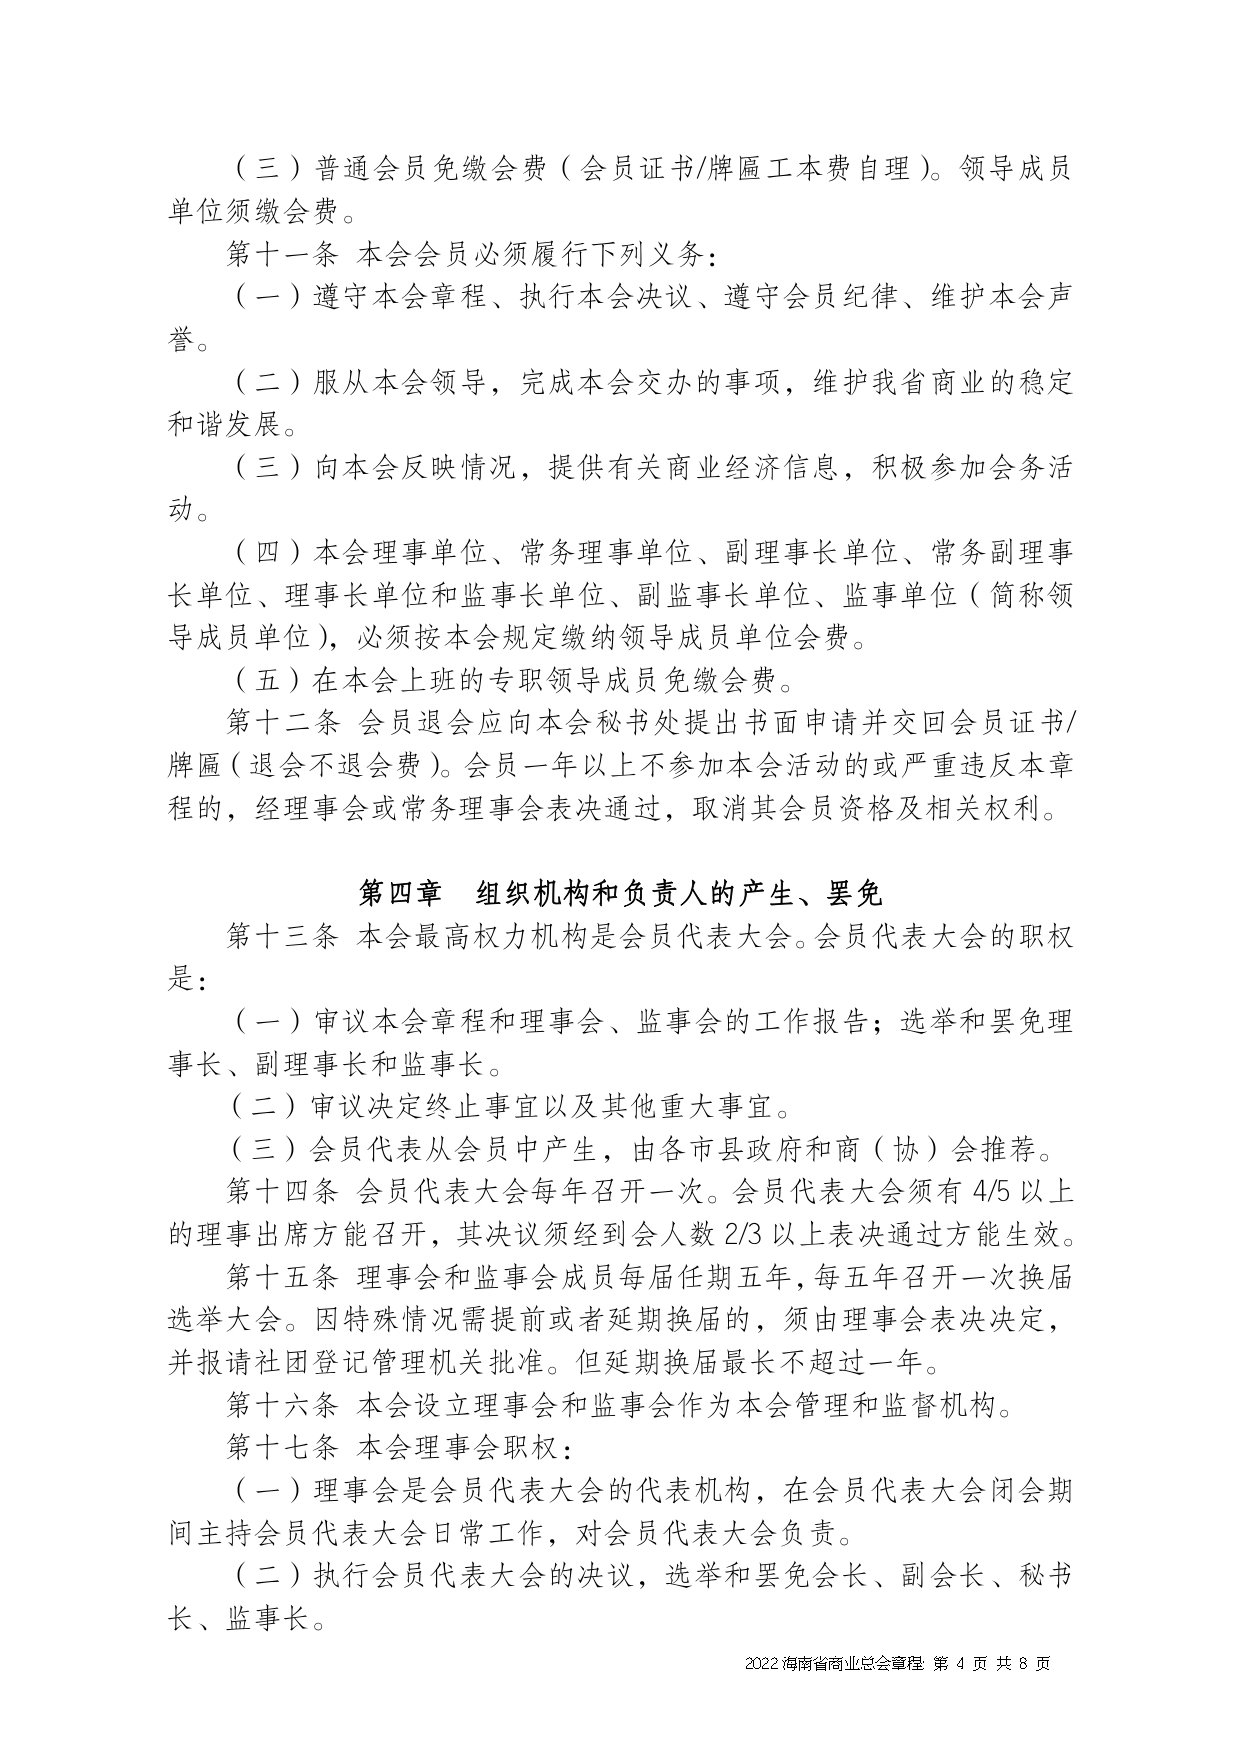 2022+海南省商业总会章程（修正版）-1_page-0004.jpg